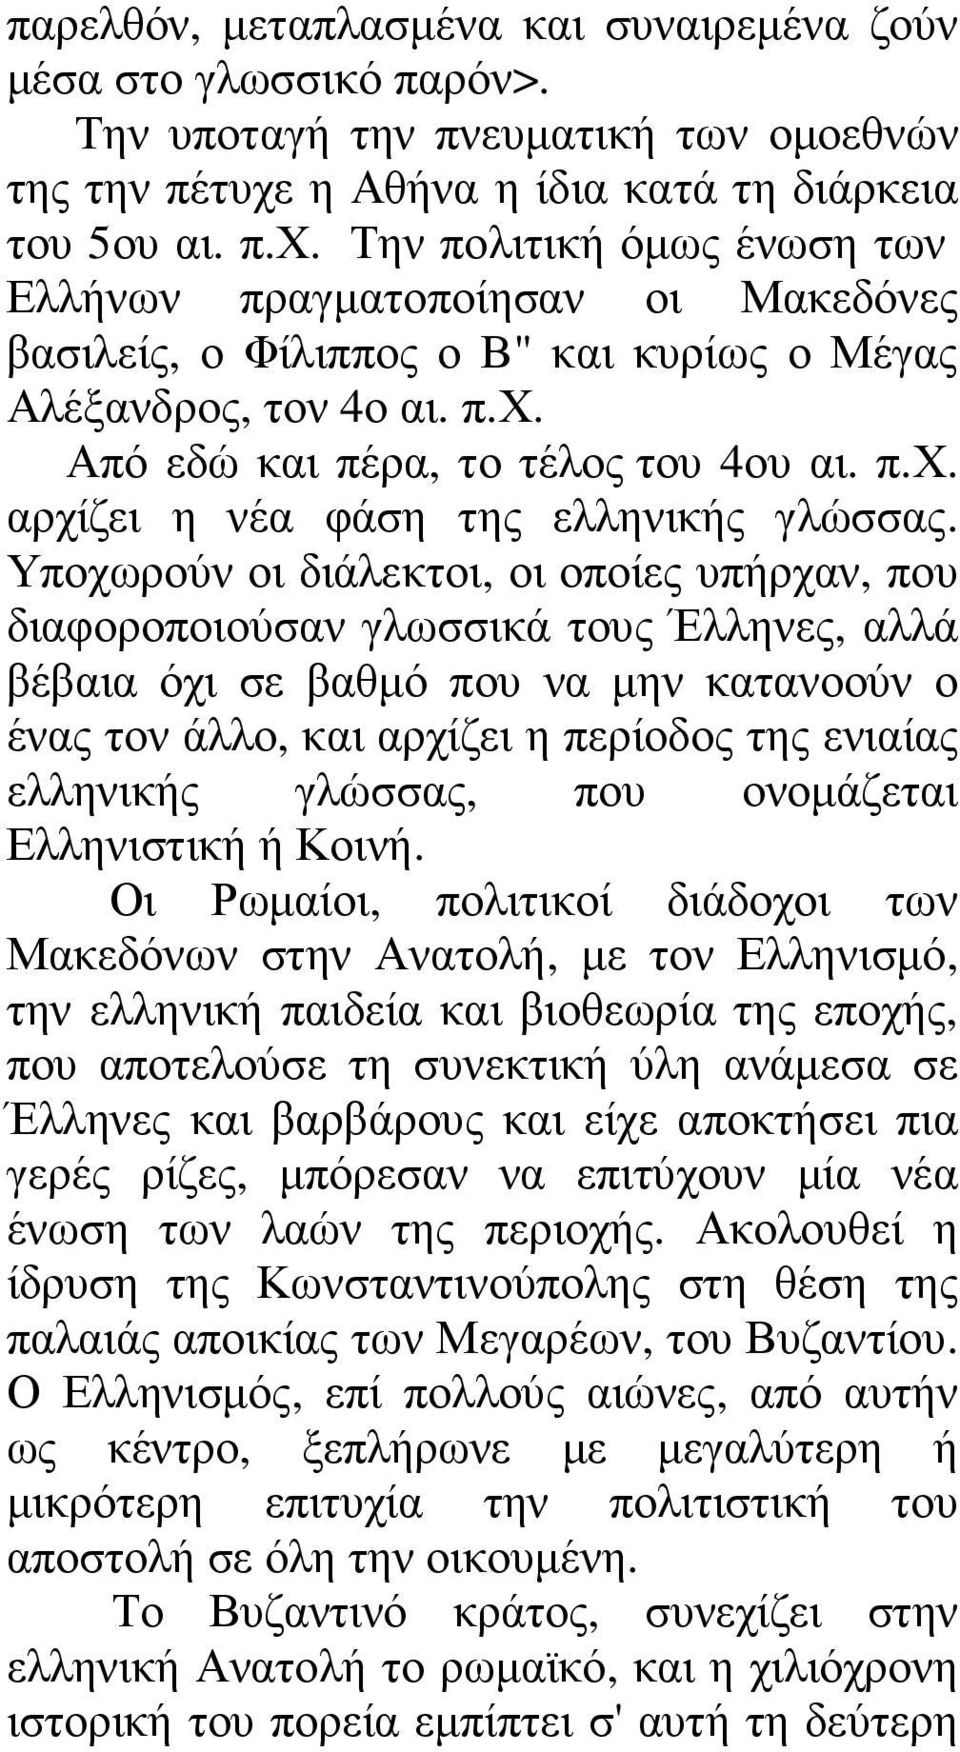 π.χ. αρχίζει η νέα φάση της ελληνικής γλώσσας.